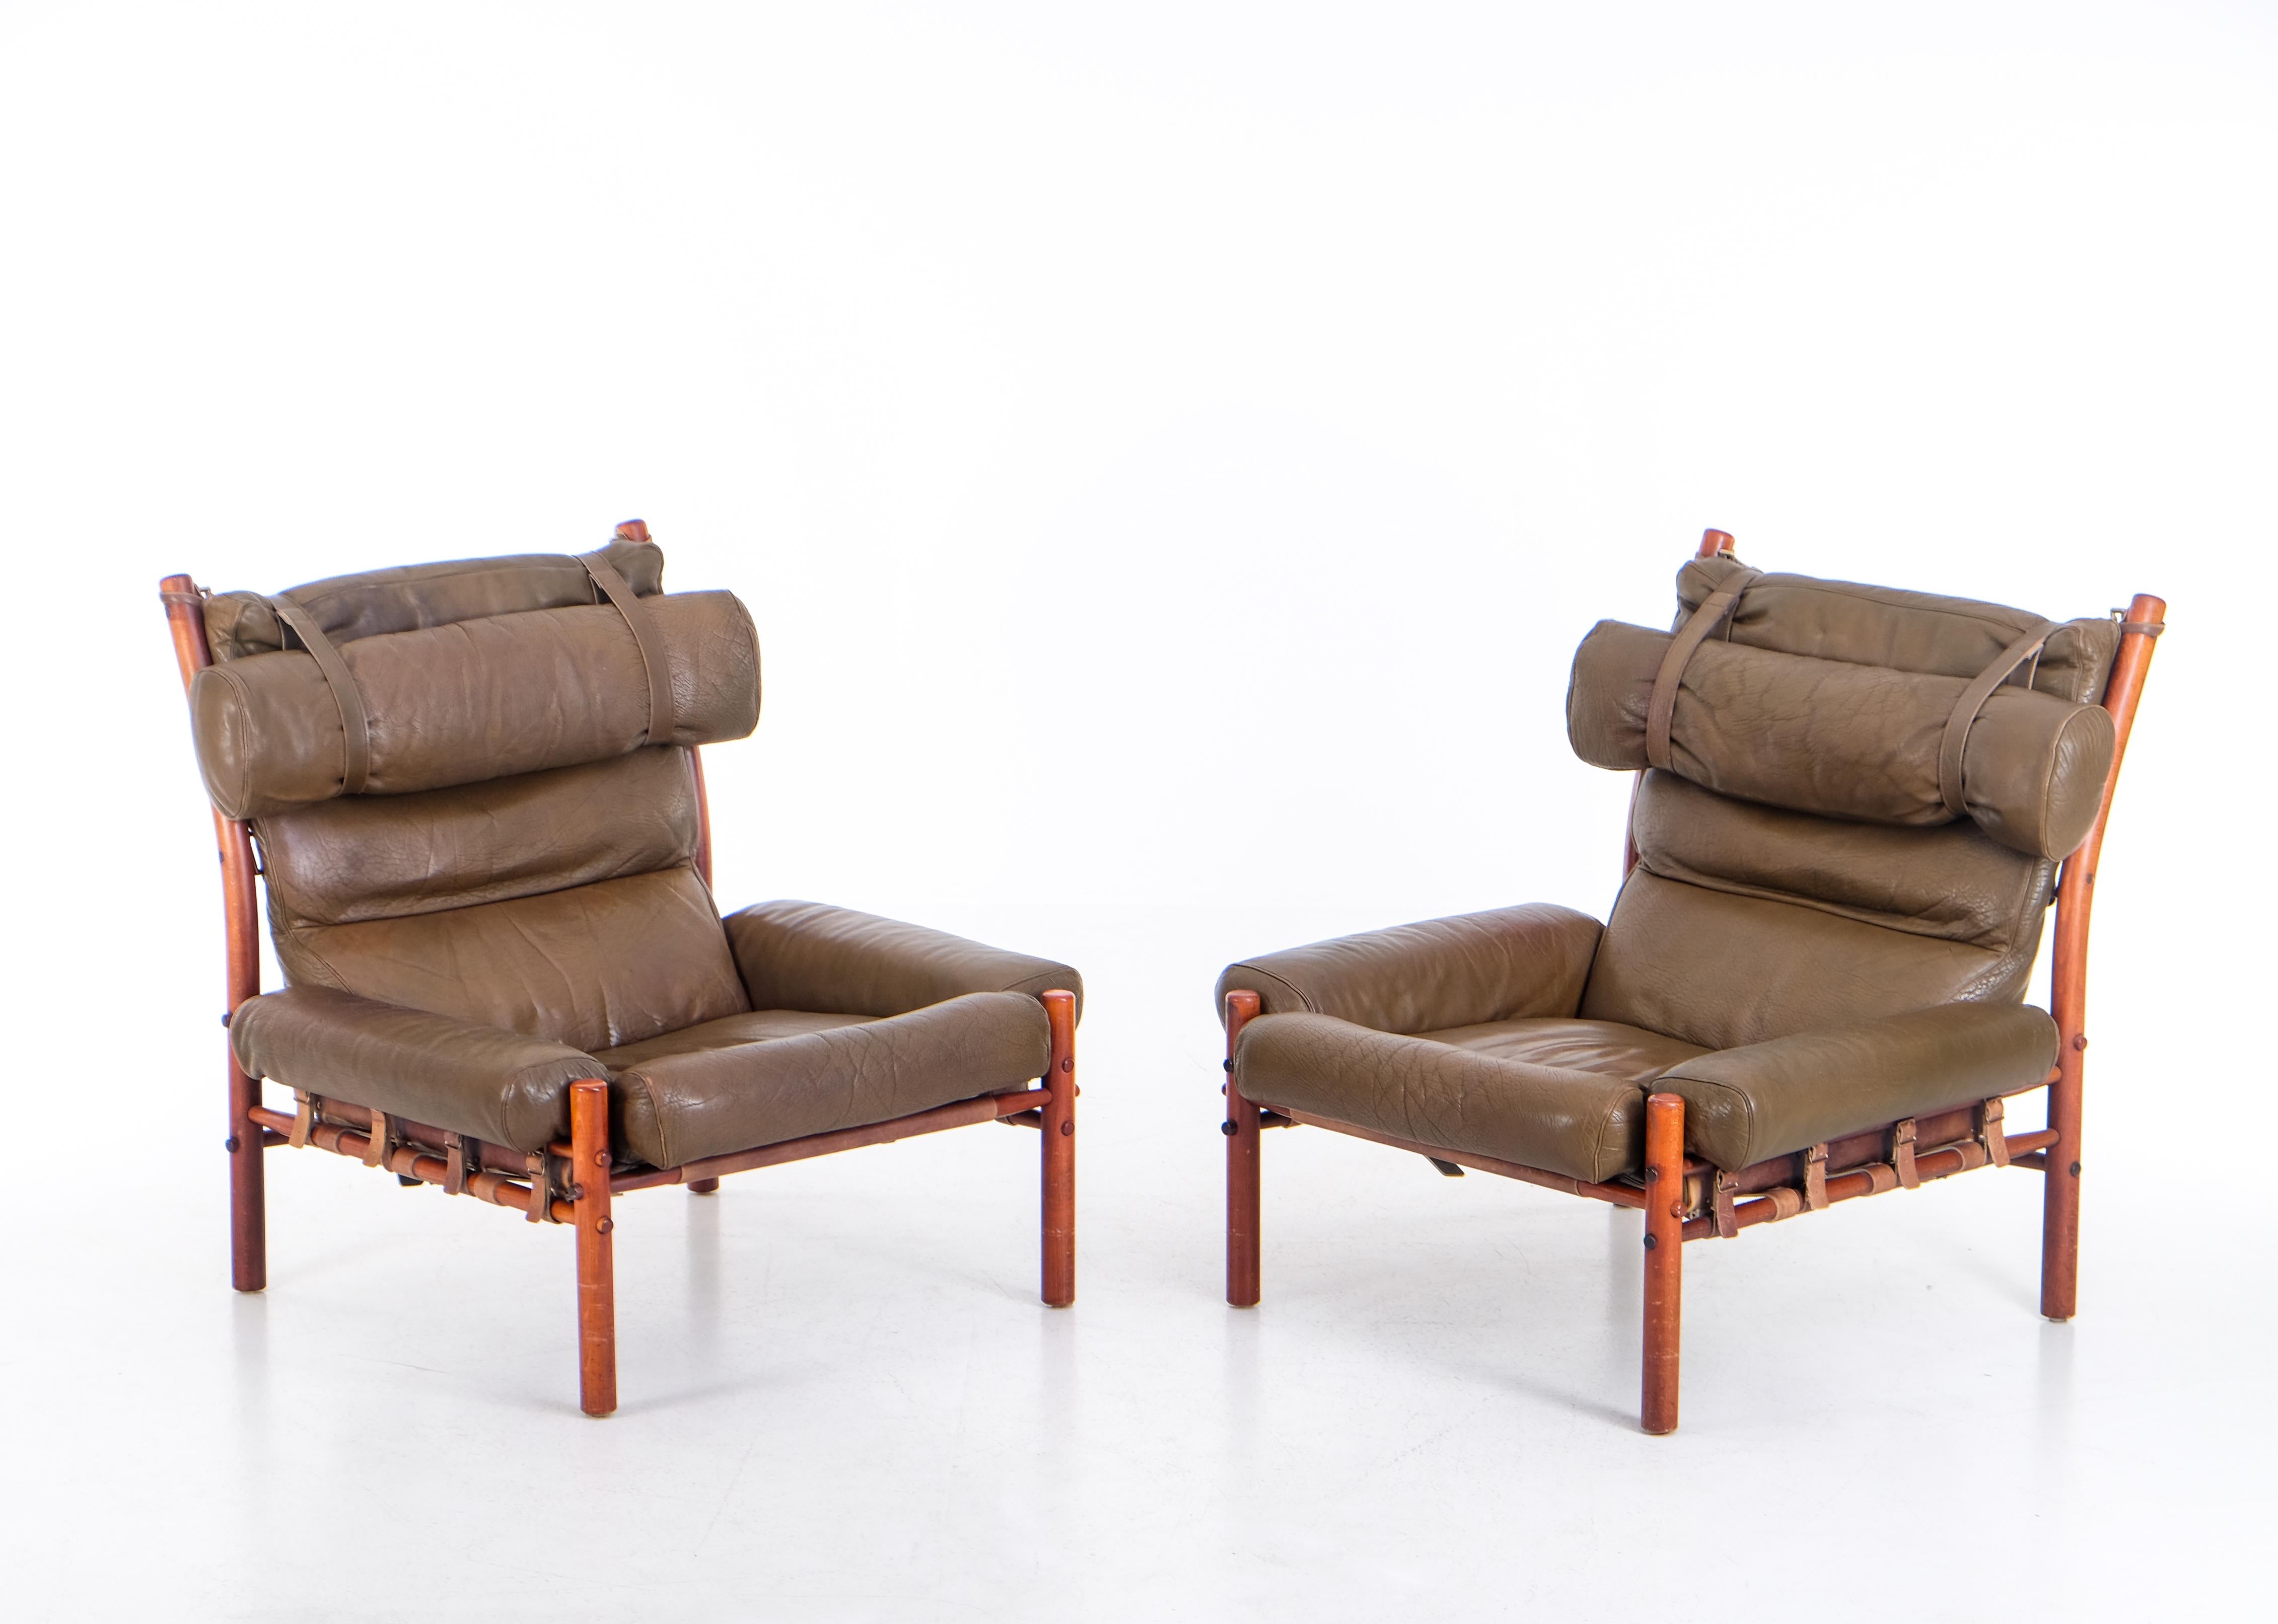 Ein Paar der sehr bequemen Inka-Stuhl mit patinierten ursprünglichen Leder. Entworfen von Arne Norell, hergestellt von Norell Möbel AB in Aneby, Schweden. Sehr guter Zustand. 







 